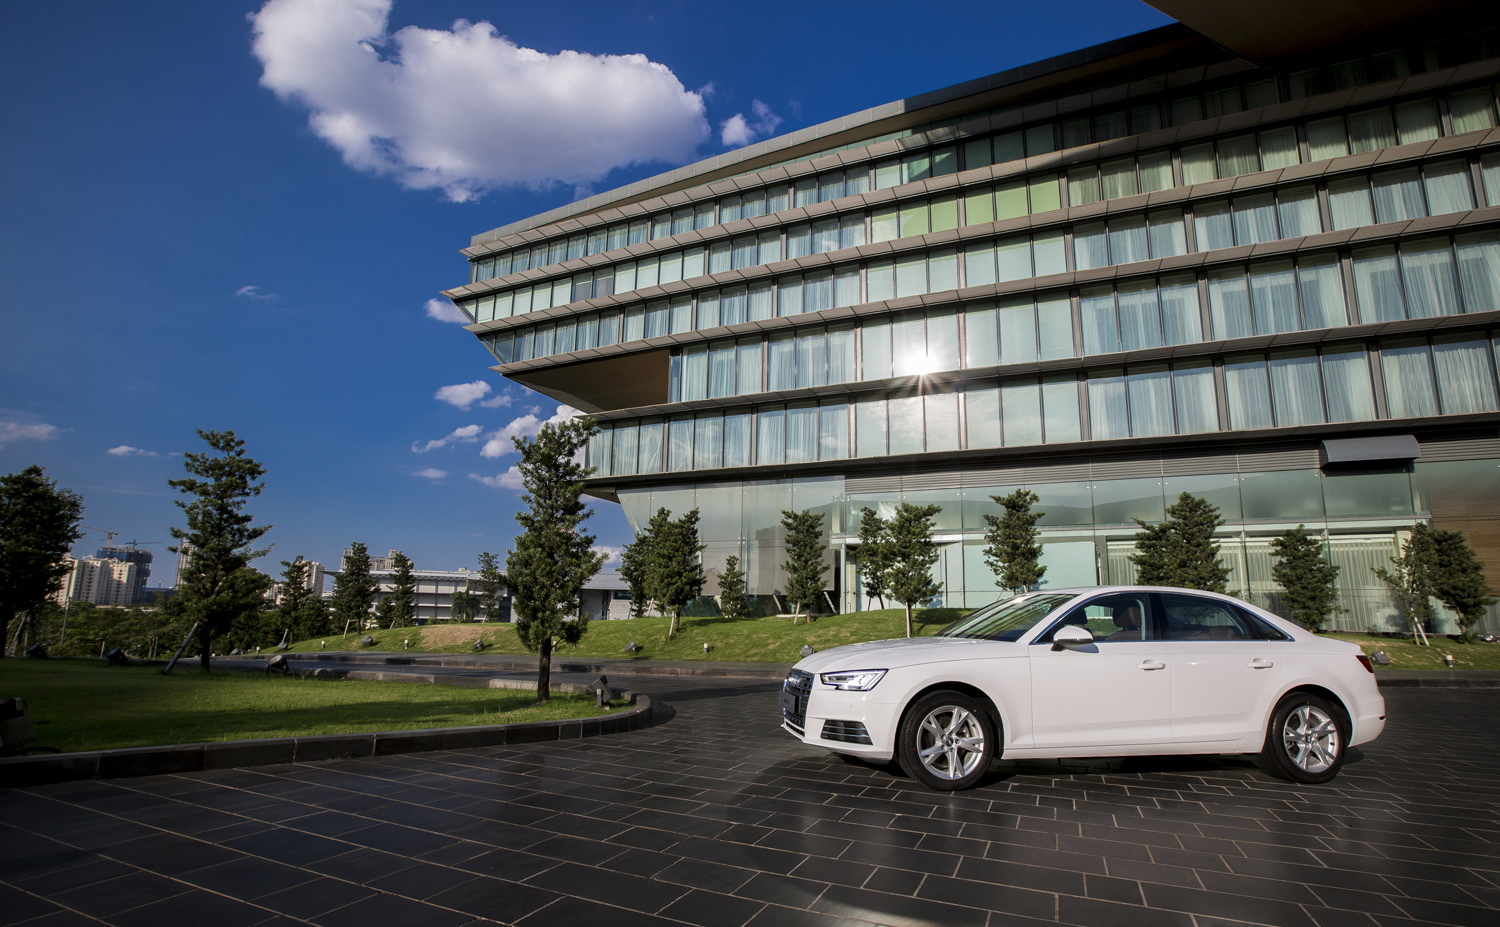 
Audi A4 thế hệ mới được Audi Việt Nam úp mở cách đây không lâu trong buổi họp báo giới thiệu Audi Progressive 2016 đã chính thức được ra mắt khách hàng Việt Nam.
